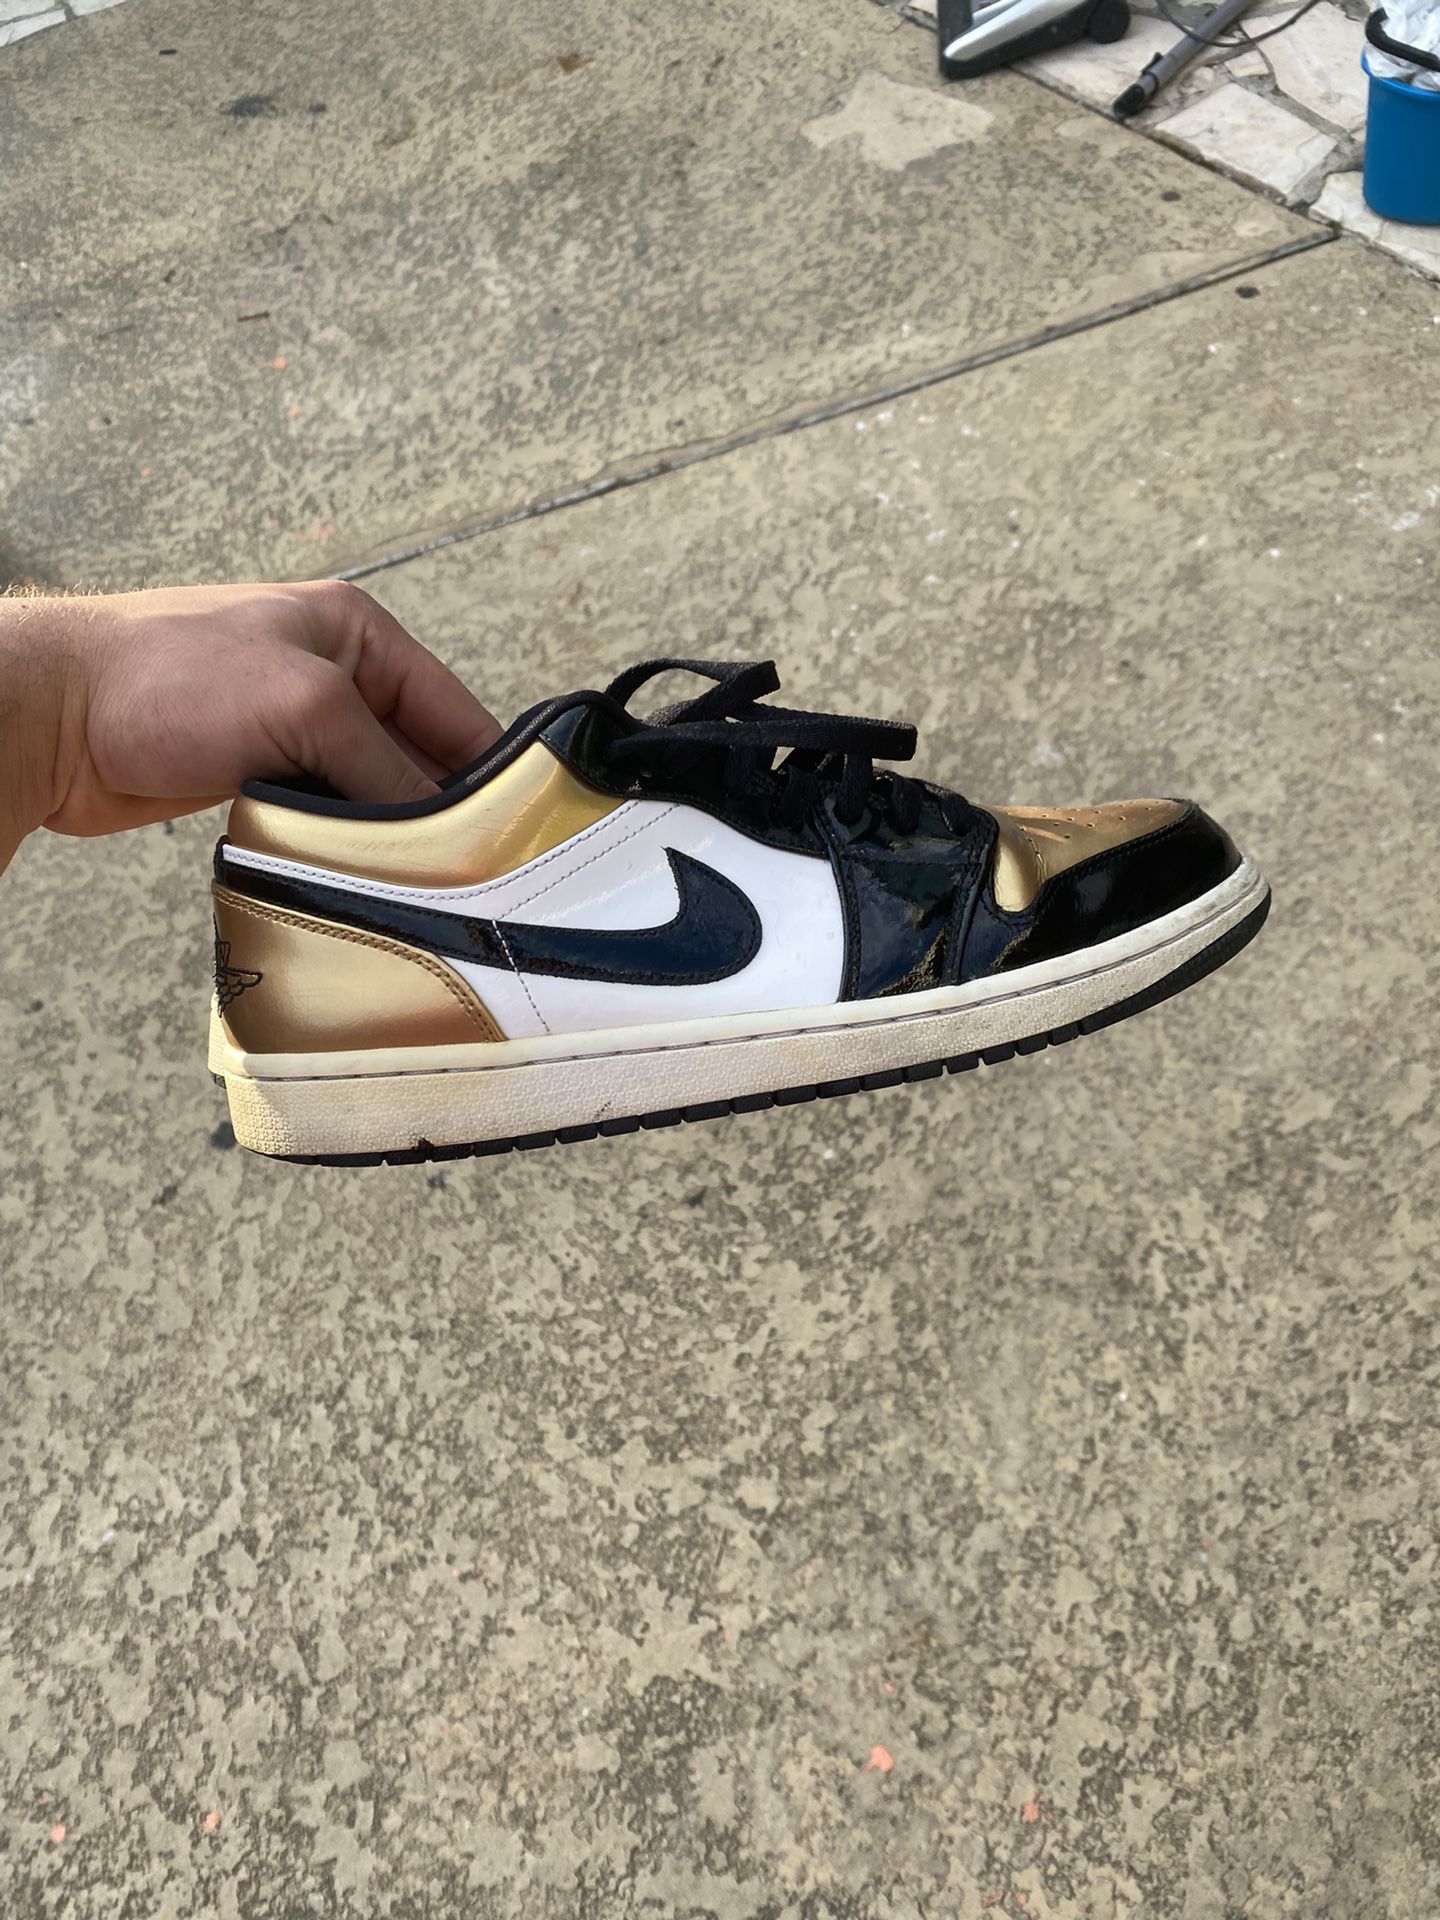 Jordan 1s low top “Gold Toe” Size 10.5